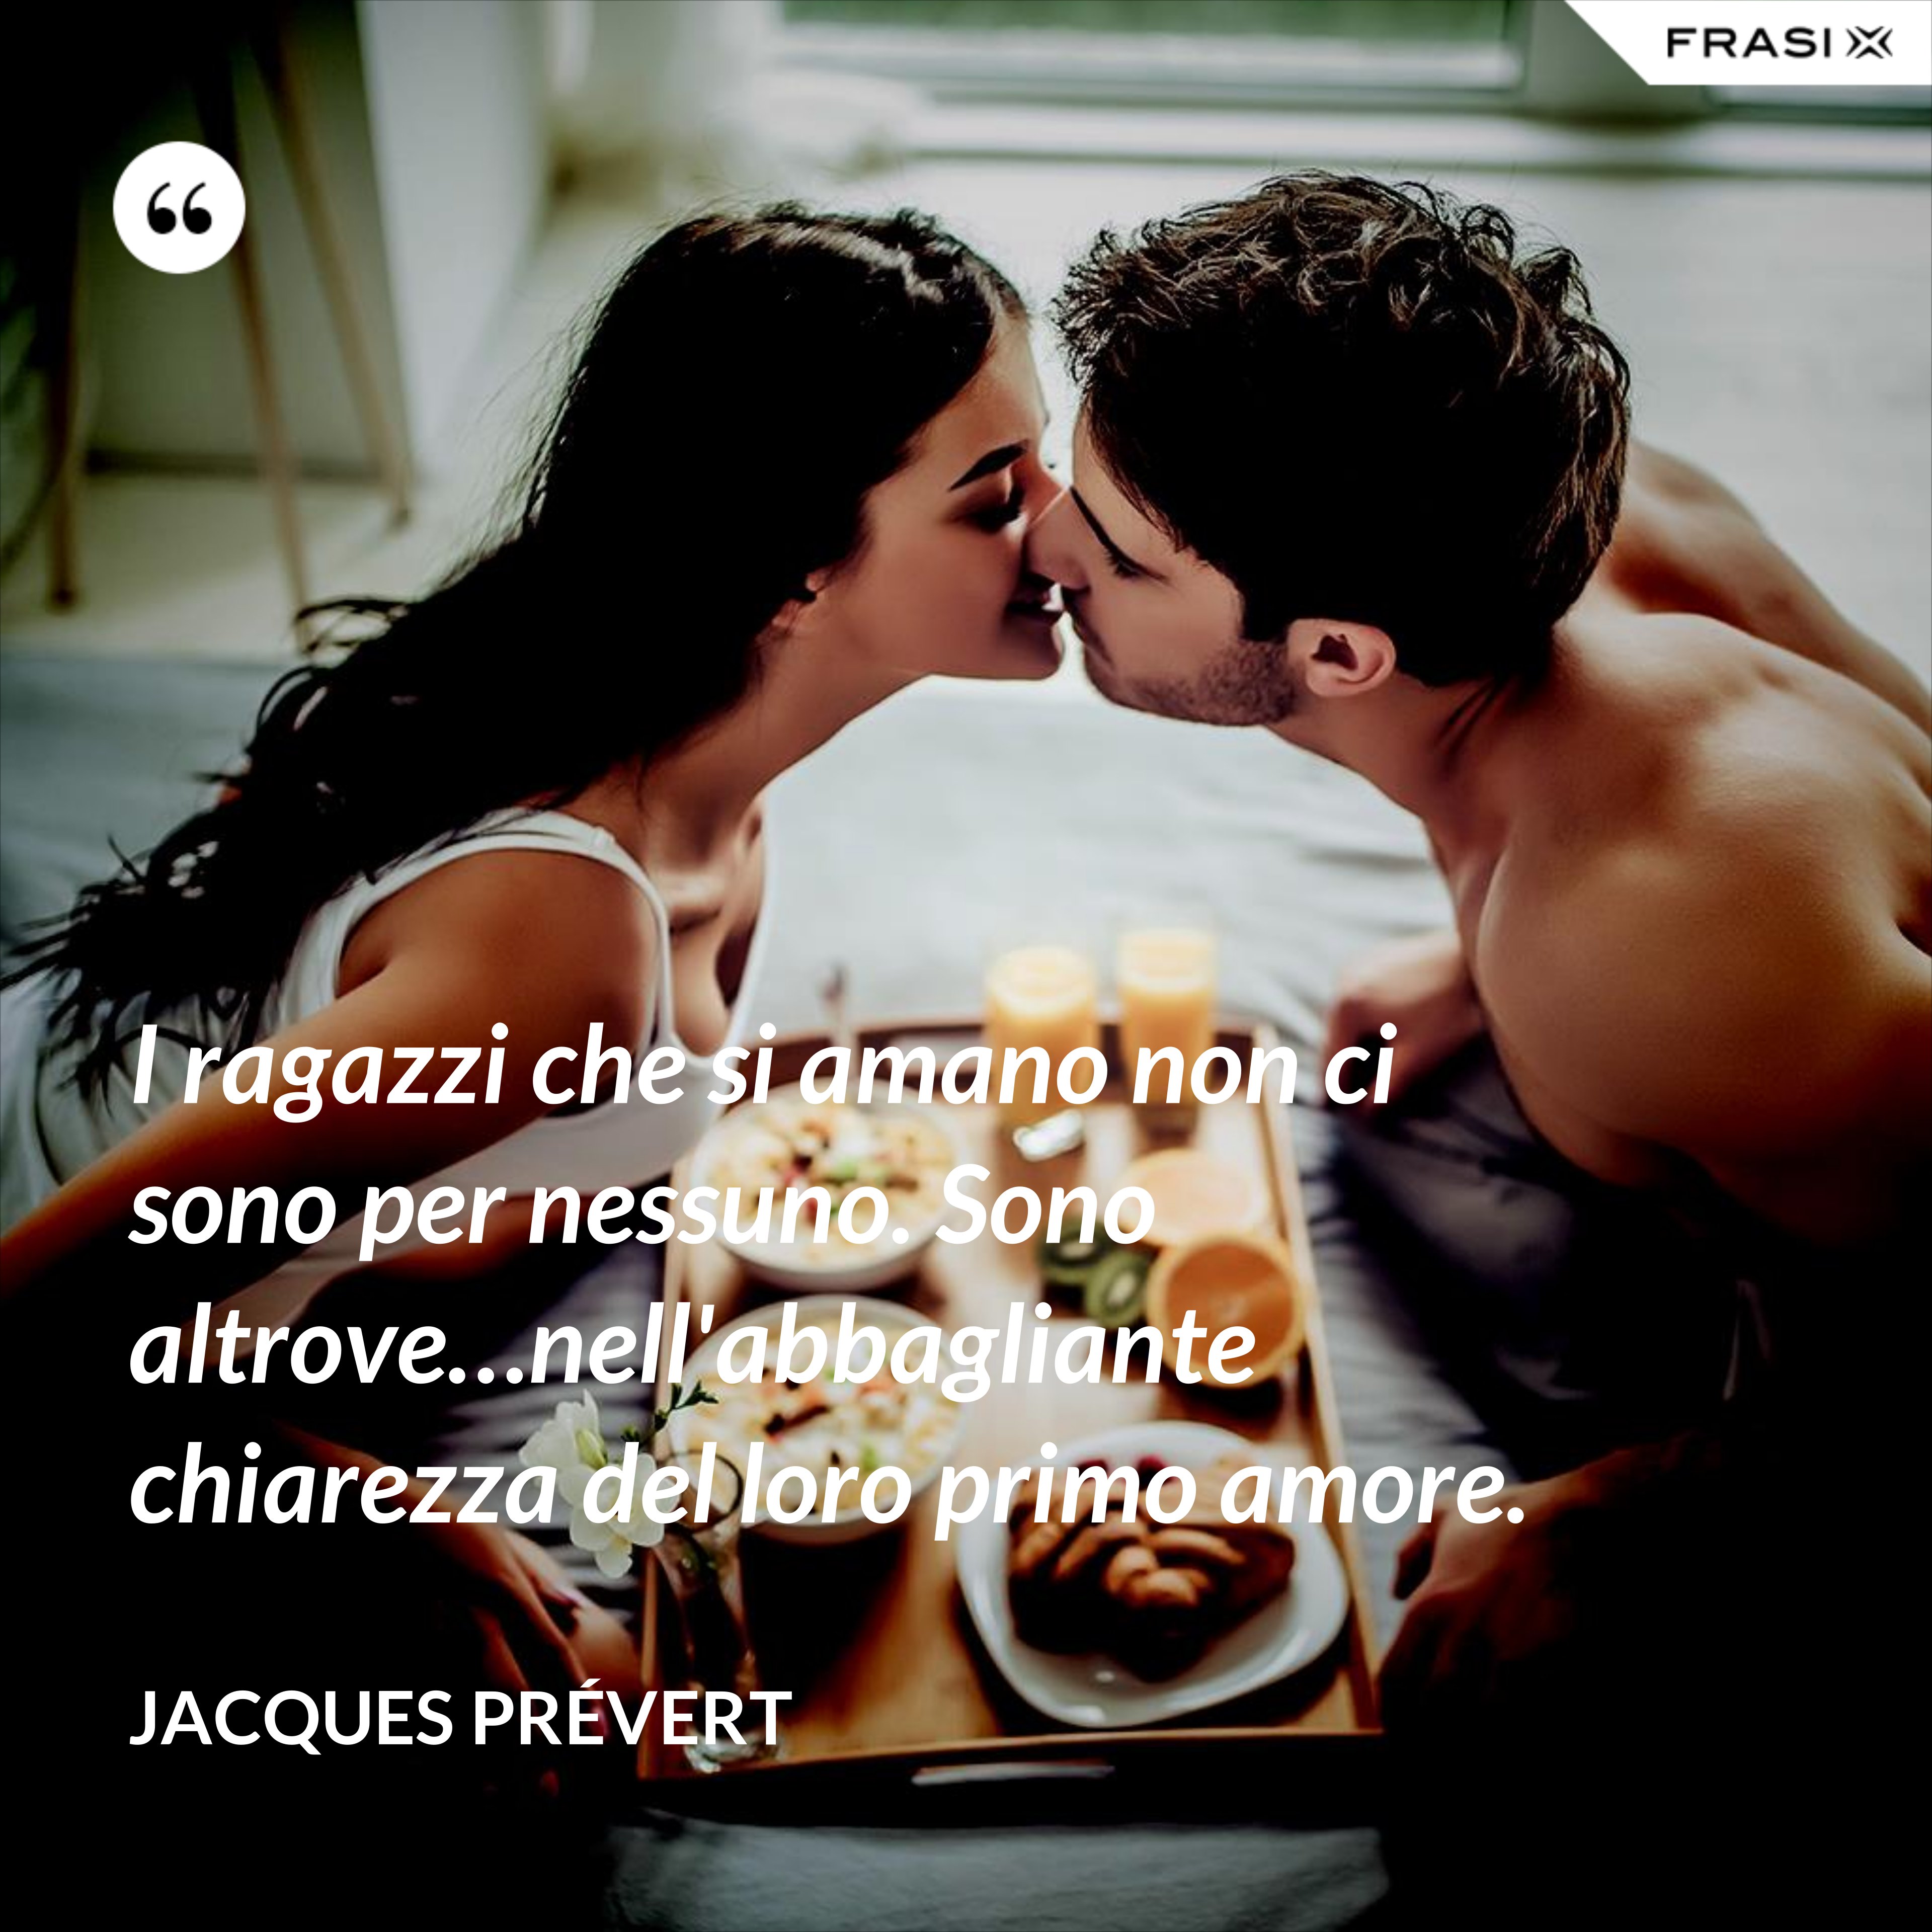 I ragazzi che si amano non ci sono per nessuno. Sono altrove…nell'abbagliante chiarezza del loro primo amore. - Jacques Prévert